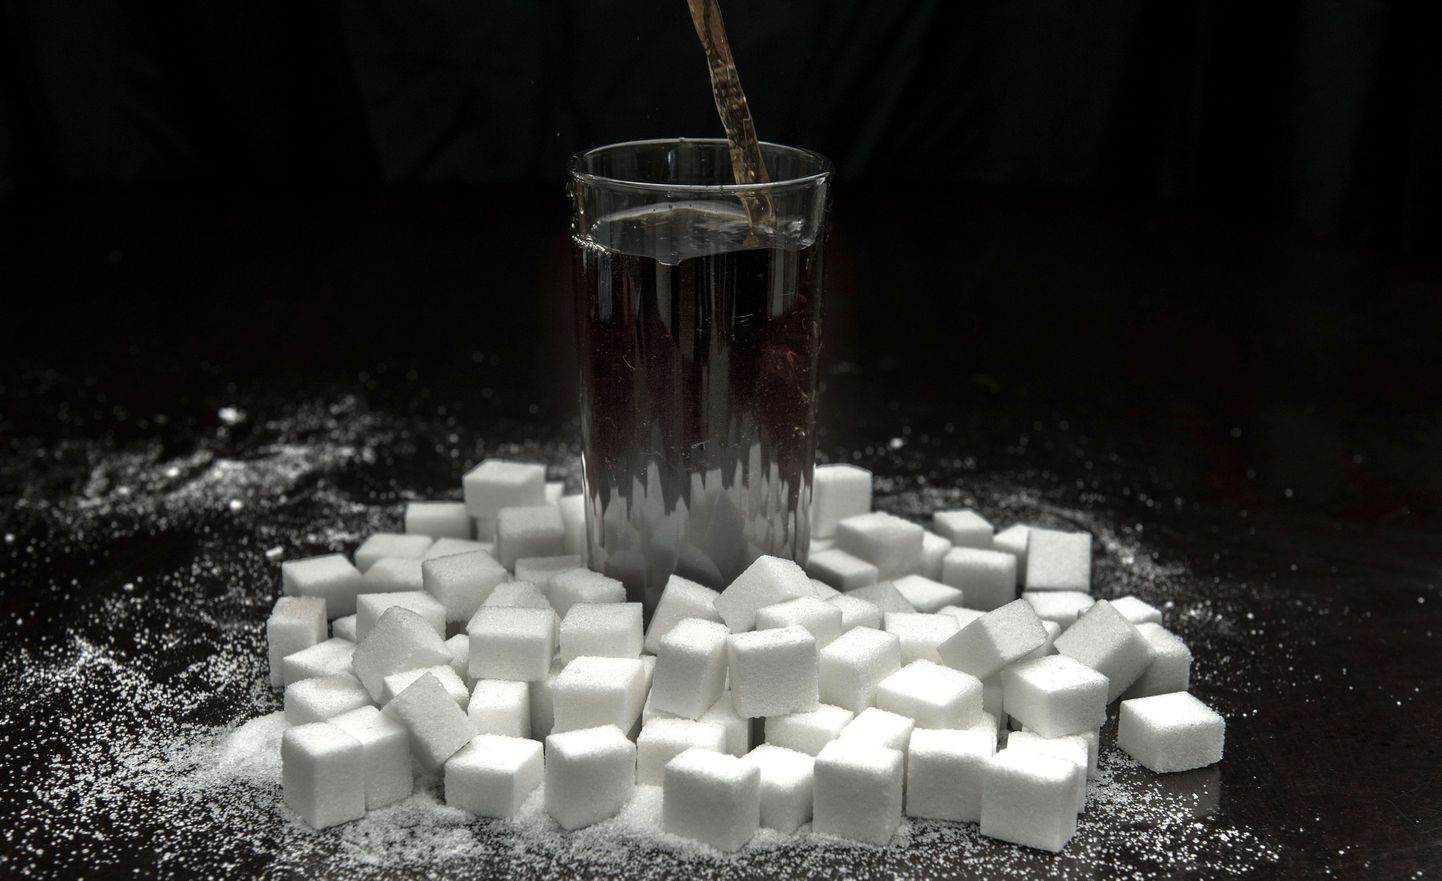 Tulevikus võib olla võimalik suhkru toksilist mõju teadlaste avastatud ensüümi abil piirata.